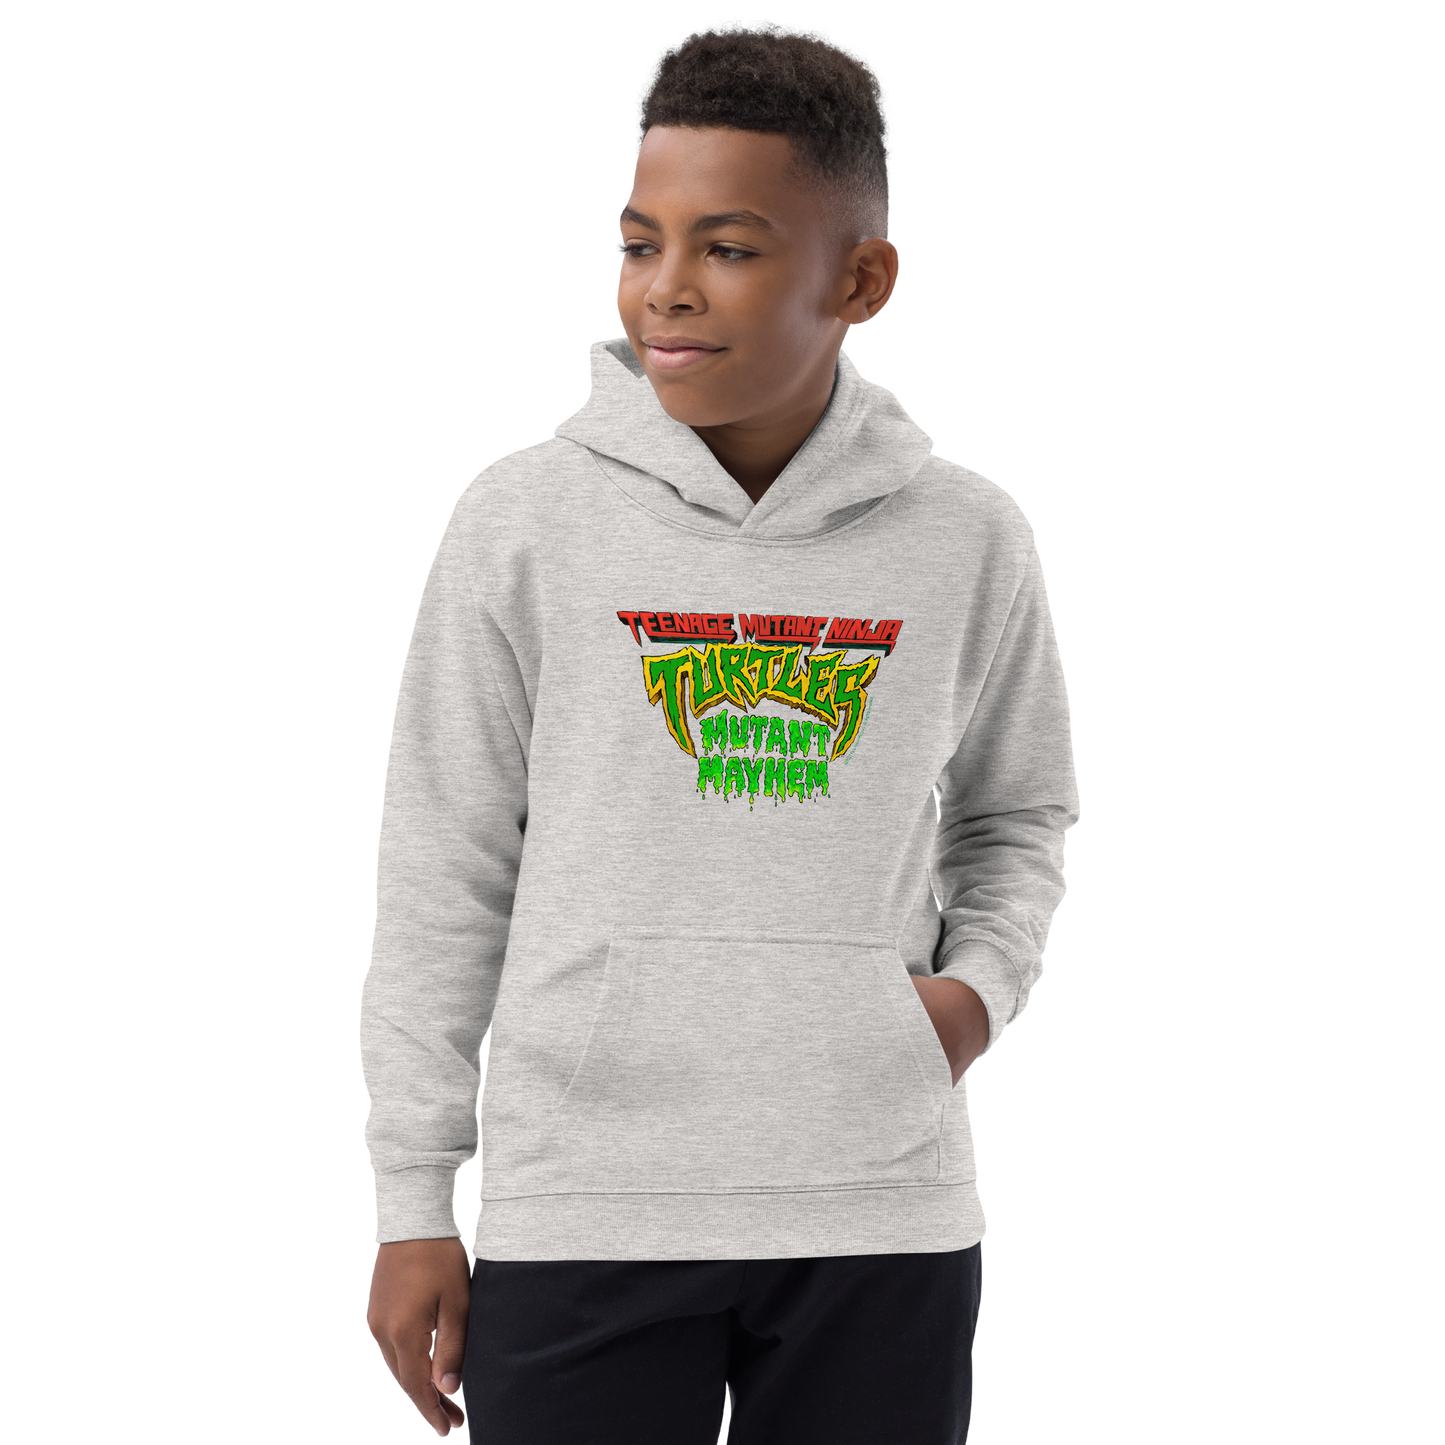 Teenage Mutant Ninja Turtles: Mutant Mayhem Logo Kids Hooded Sweatshirt